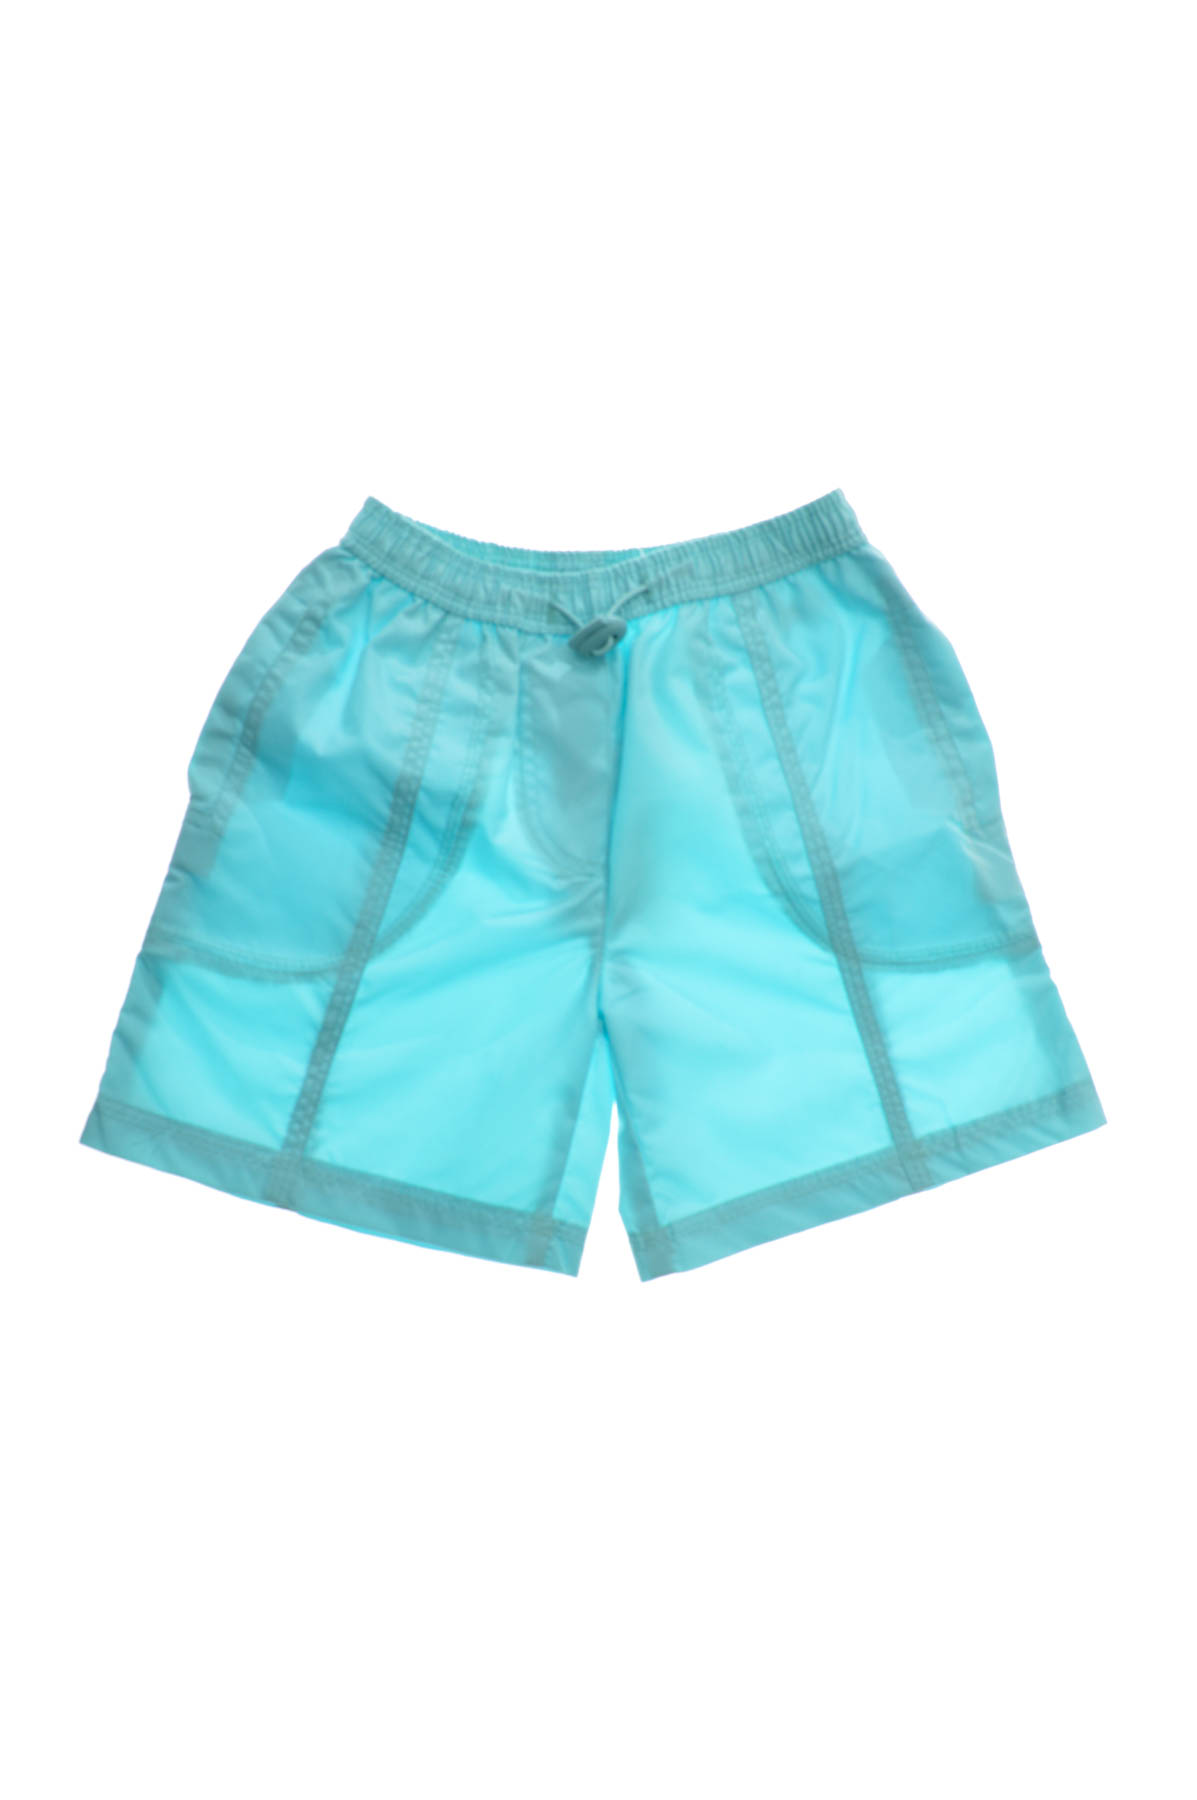 Shorts for girls - HAVОC - 0